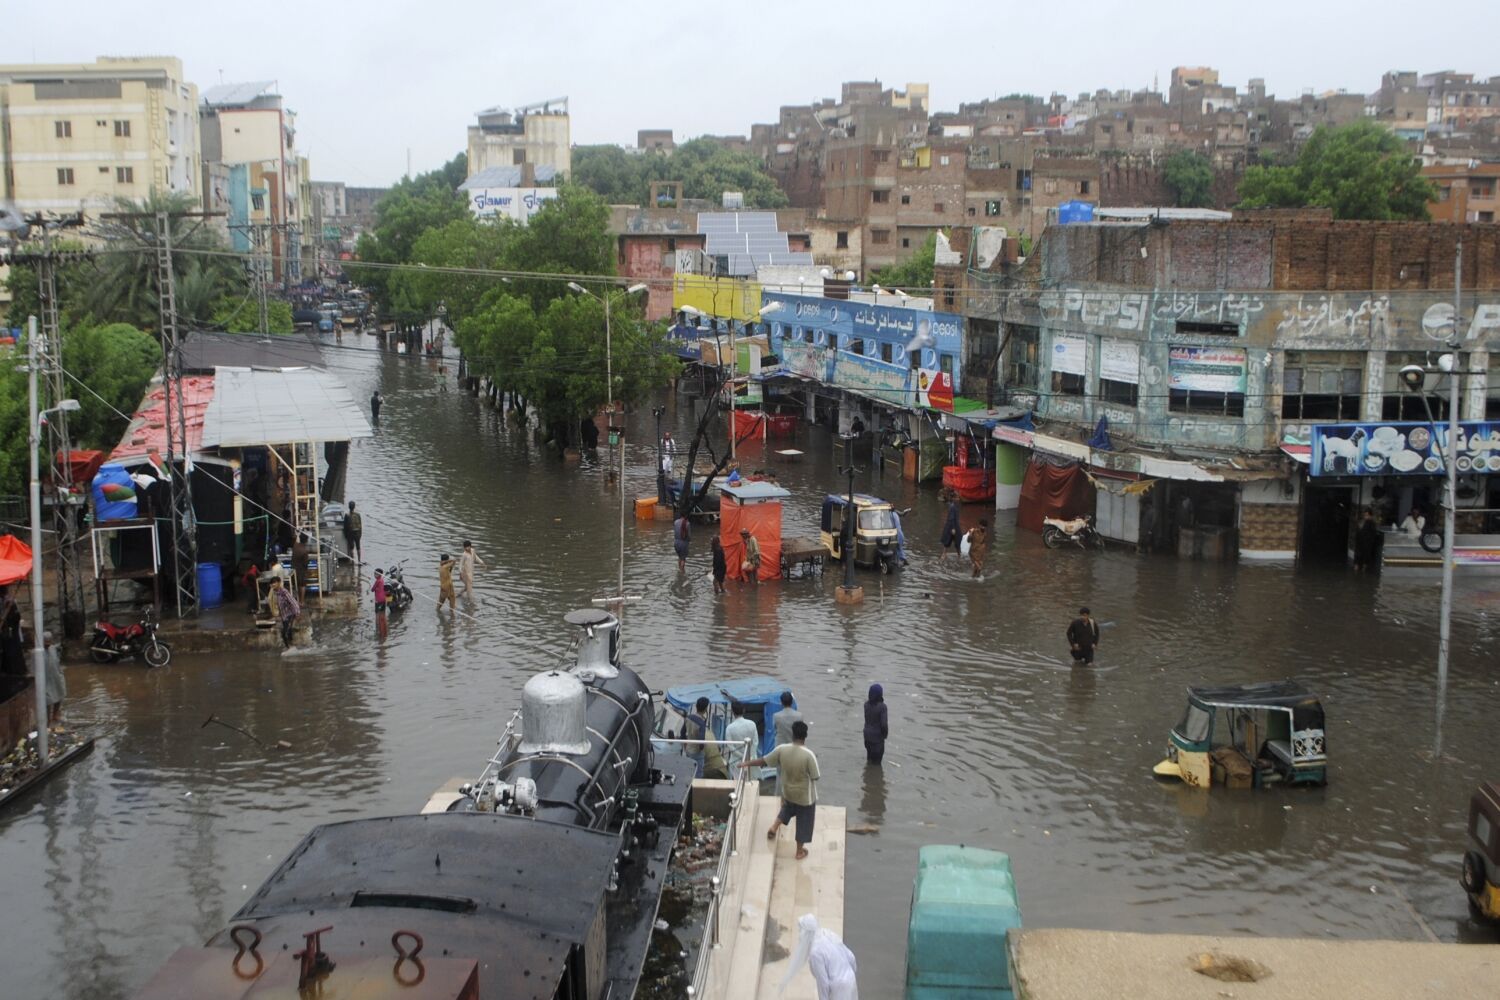 Acımasız sel ile mücadele eden Pakistan'a nasıl yardım edilir?